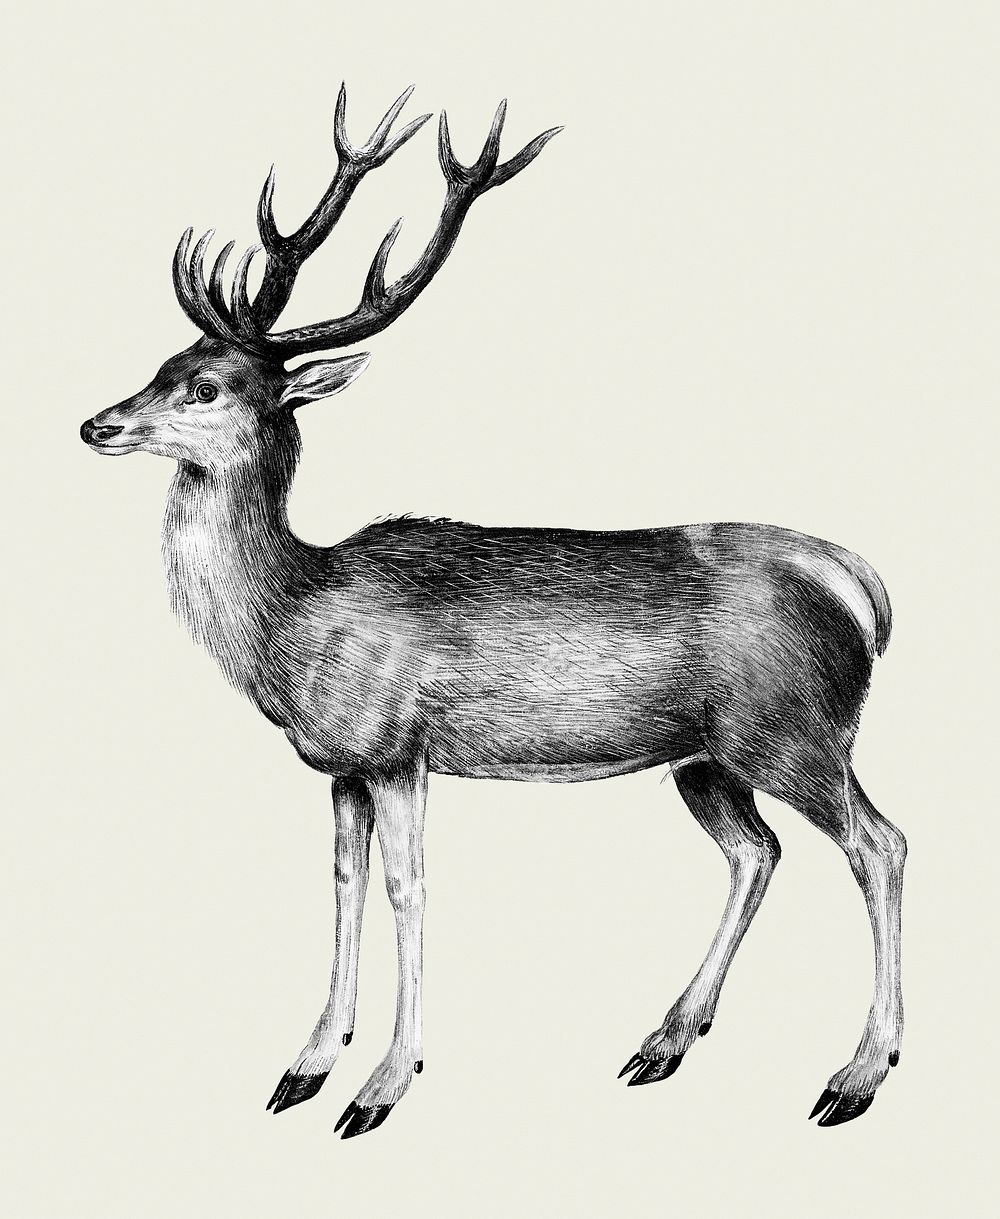 Vintage deer illustration